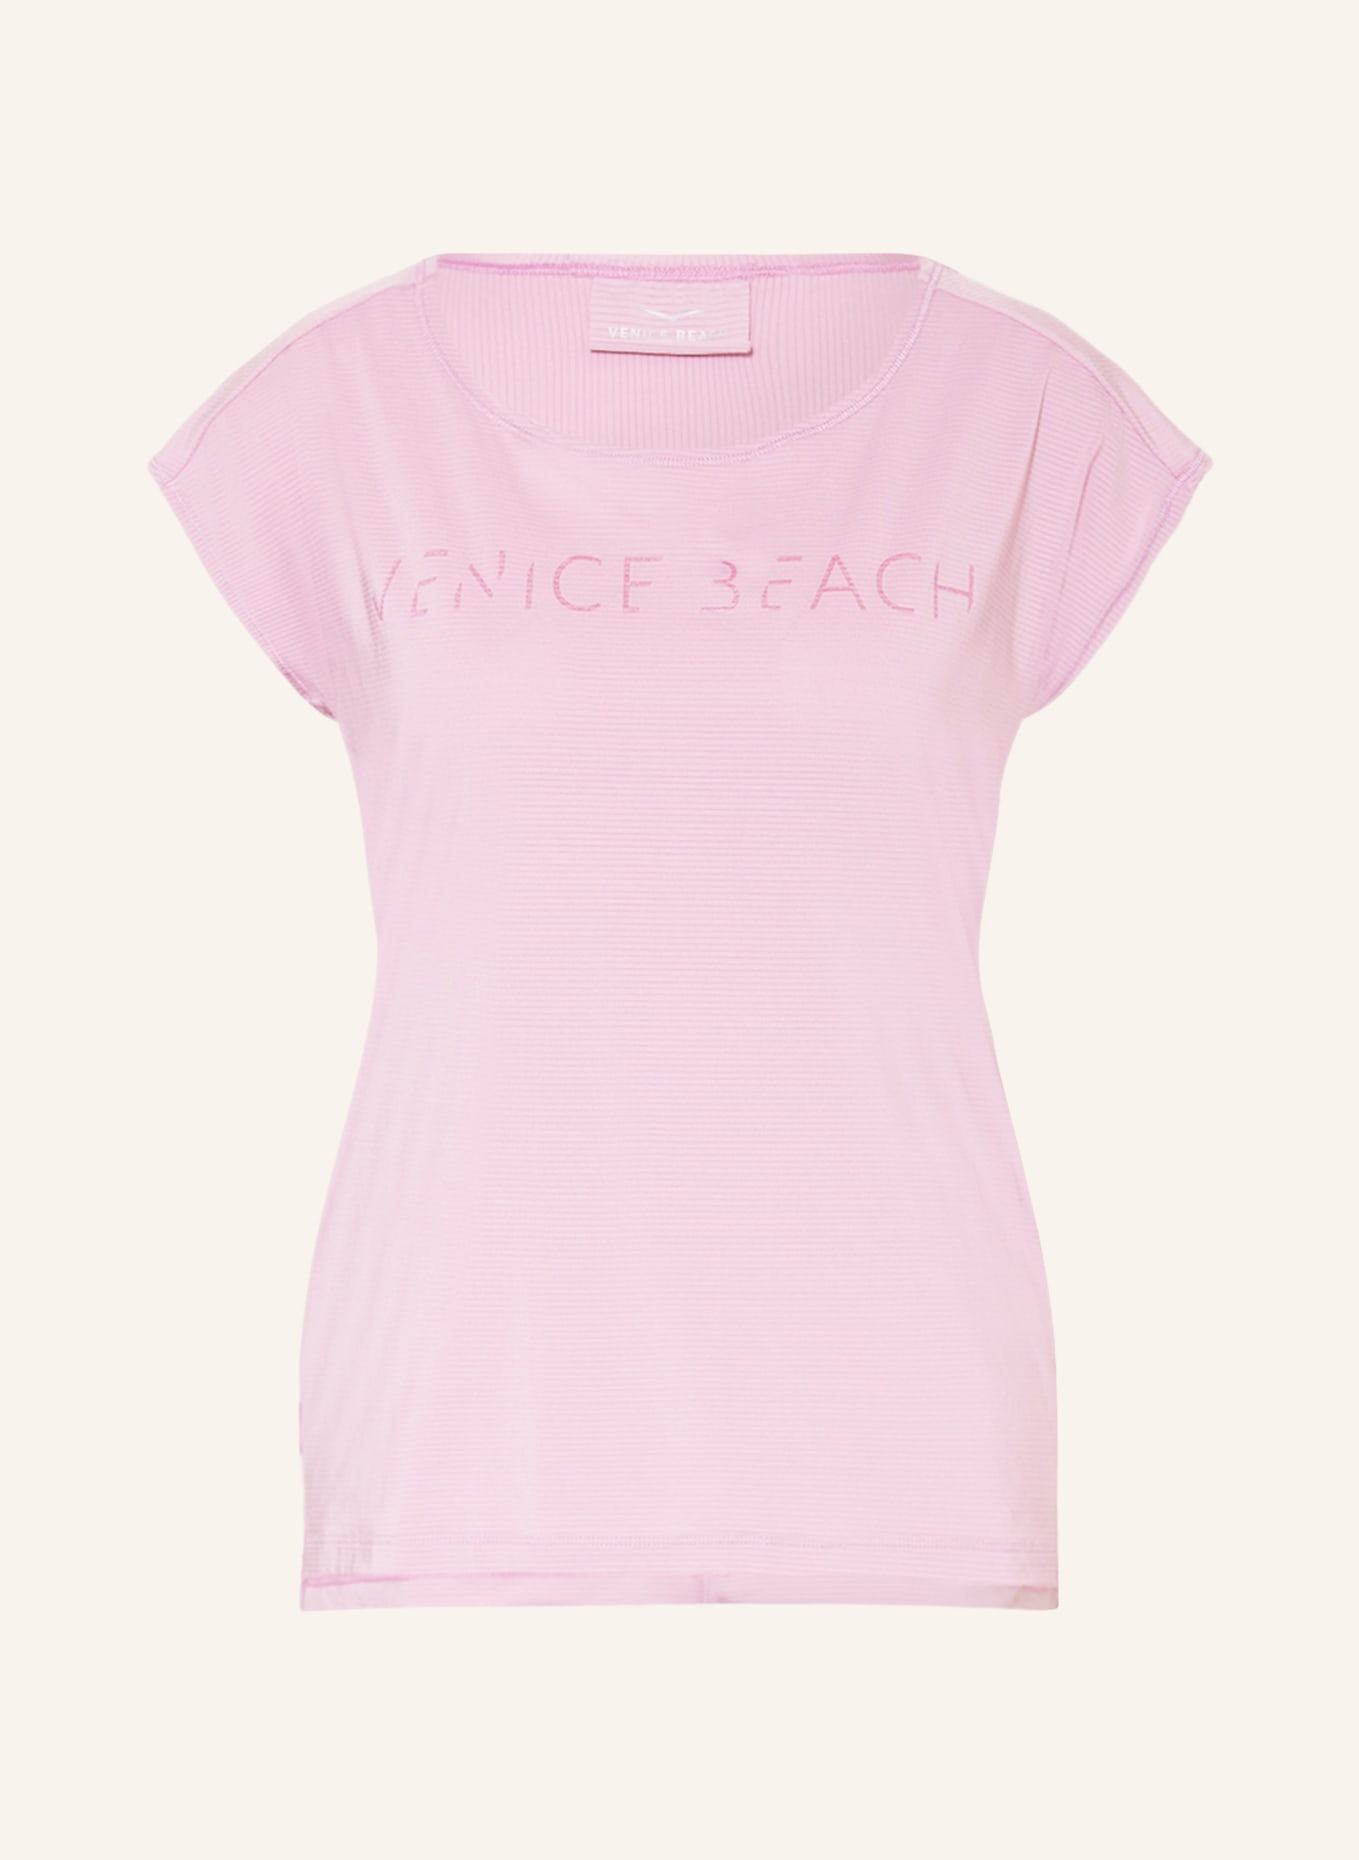 VENICE BEACH T-shirt ALICE, Color: PURPLE (Image 1)